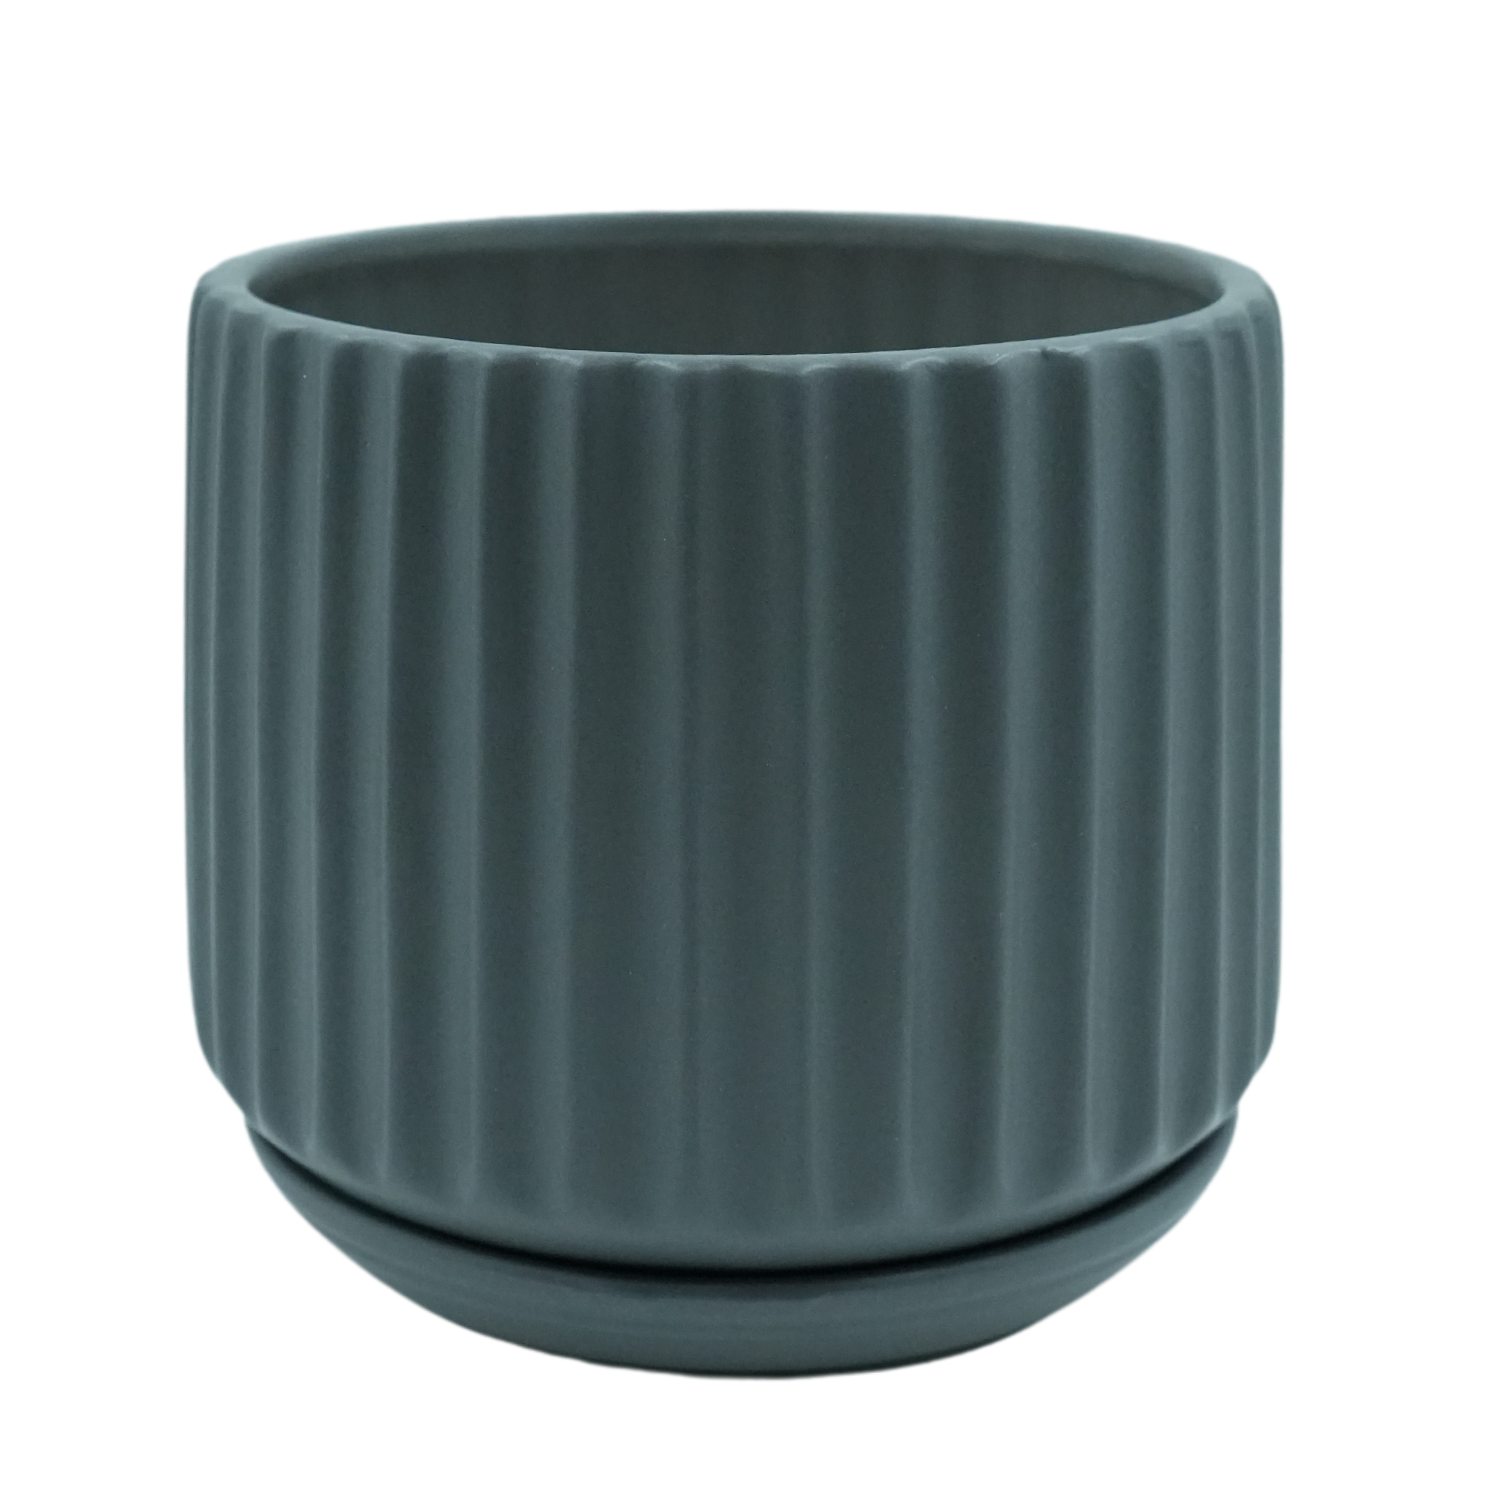 Designer Ceramic Pot Grey, Matt Finish,Medium) for Home & Indoor Plant Decor